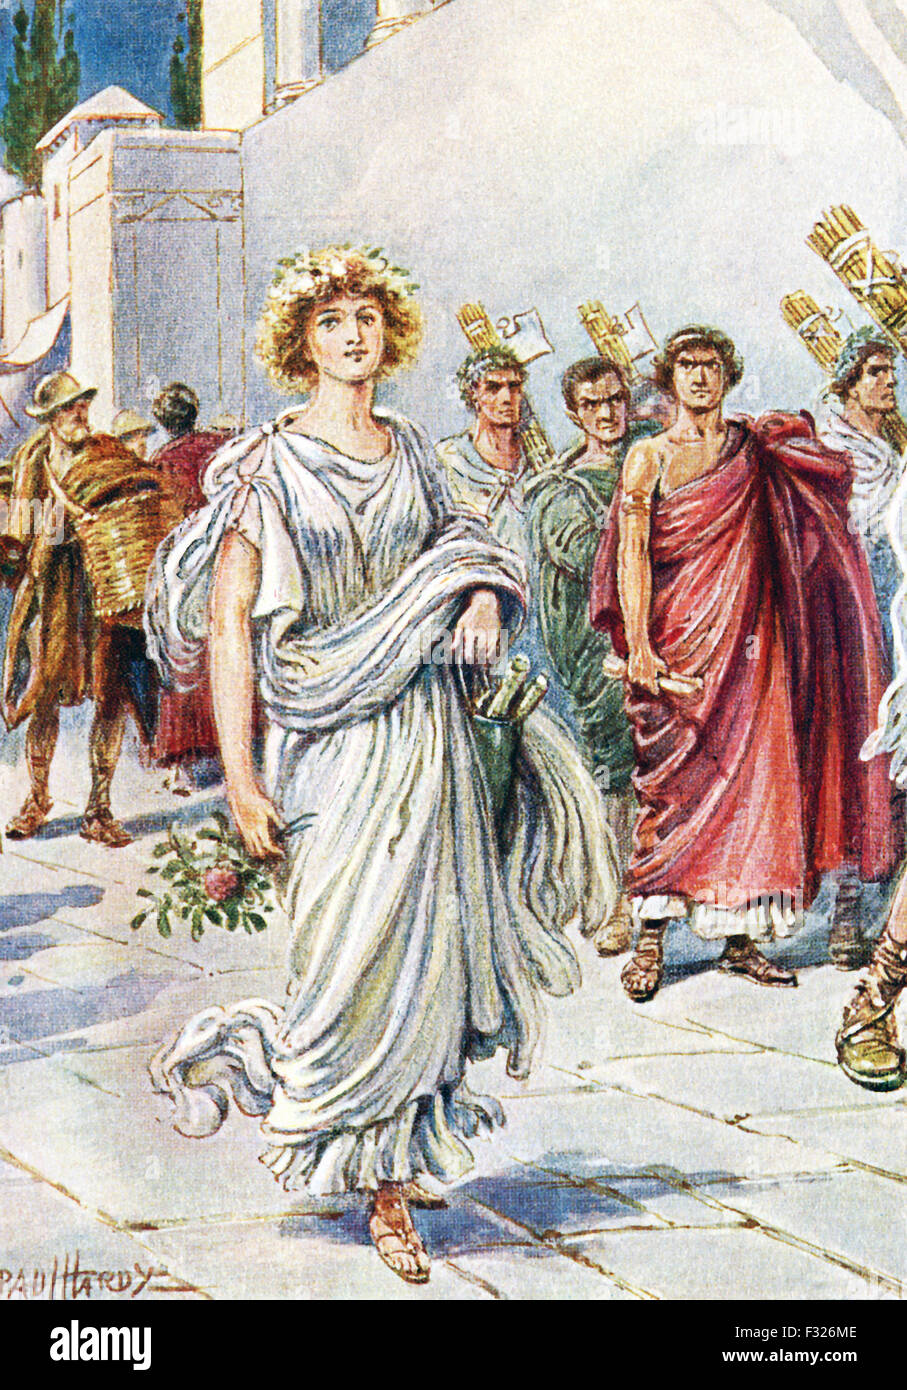 Laut der antiken römischen Historiker Titus Livius, Virginia (auch buchstabiert Verginia) war die Tochter des angesehenen Zenturio Lucius Virginius. Appius Claudius, einer der politischen Führer von Rom – ein Dezemvir als Büro hieß und er war einer der zehn hochrangigen und mächtige Männer — 451 v. Chr. beschloss er haben wollte. Er sagte, sie war tatsächlich ein Sklave seines Mandanten und so hatte er einen Anspruch auf ihr. Virginias Vater gebeten, sie in Frage zu stellen – er tat es und bevor jemand ihn stoppen könnte, er stach seine Tochter, so dass sie nicht mit Appius Claudius gehen müsste. Stockfoto